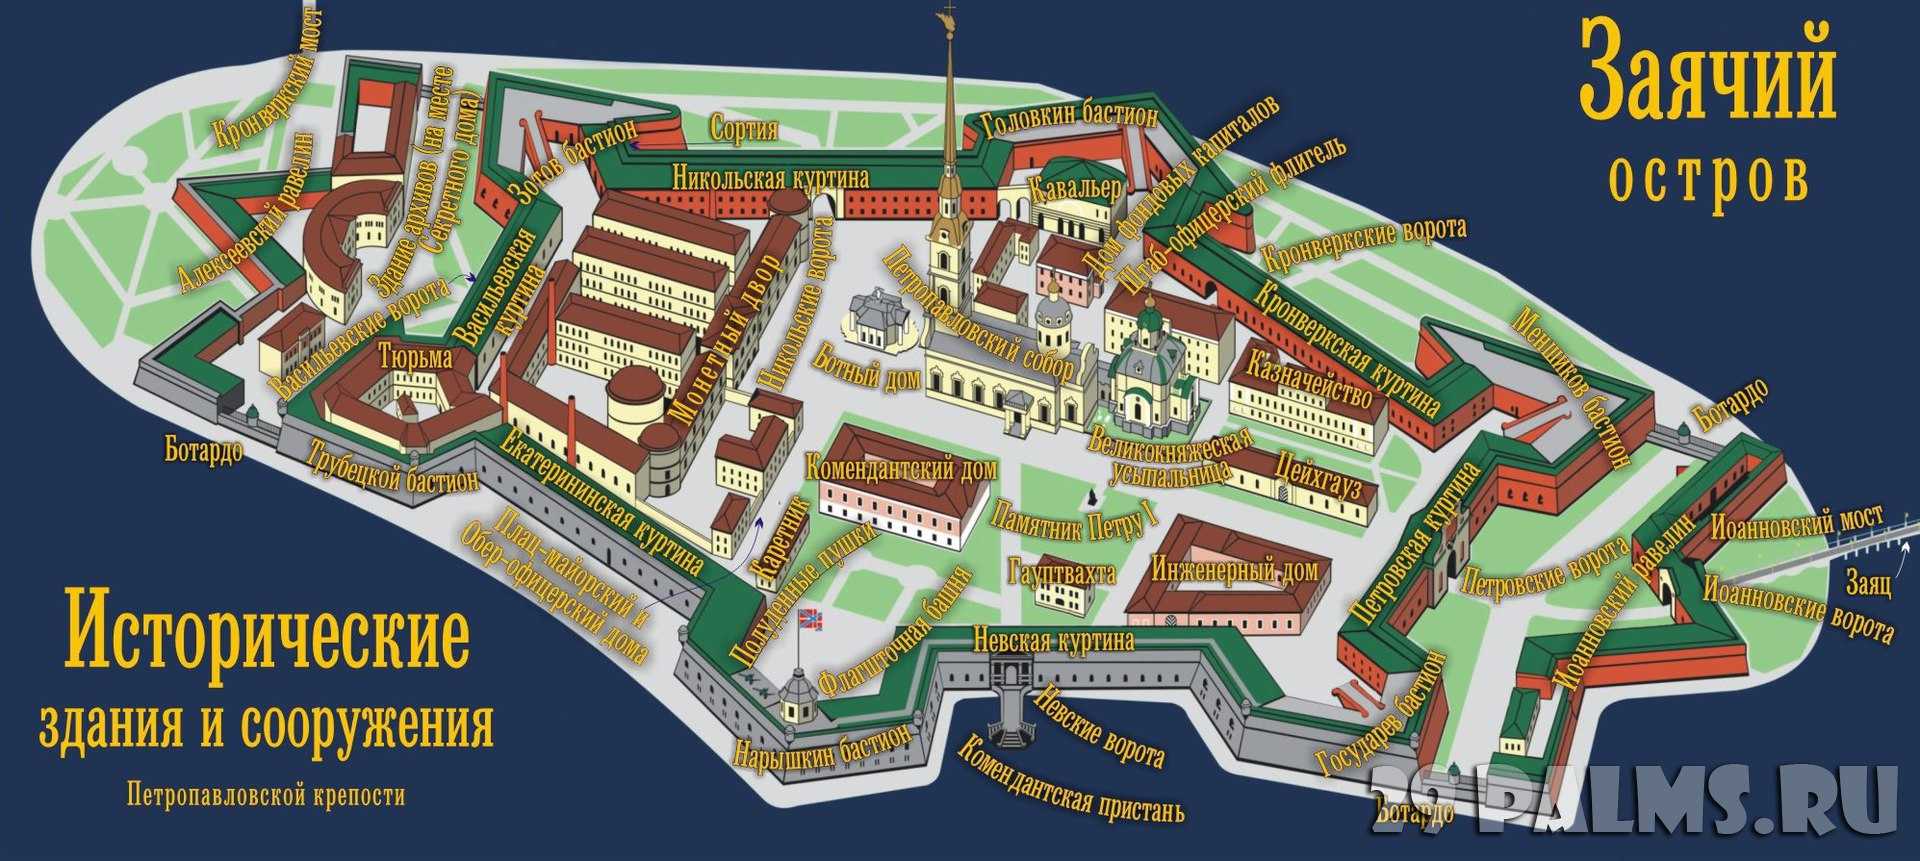 История, фотографии и описание бастионов, равелин, ворот и достопримечательностей Петропавловской крепости в Питере